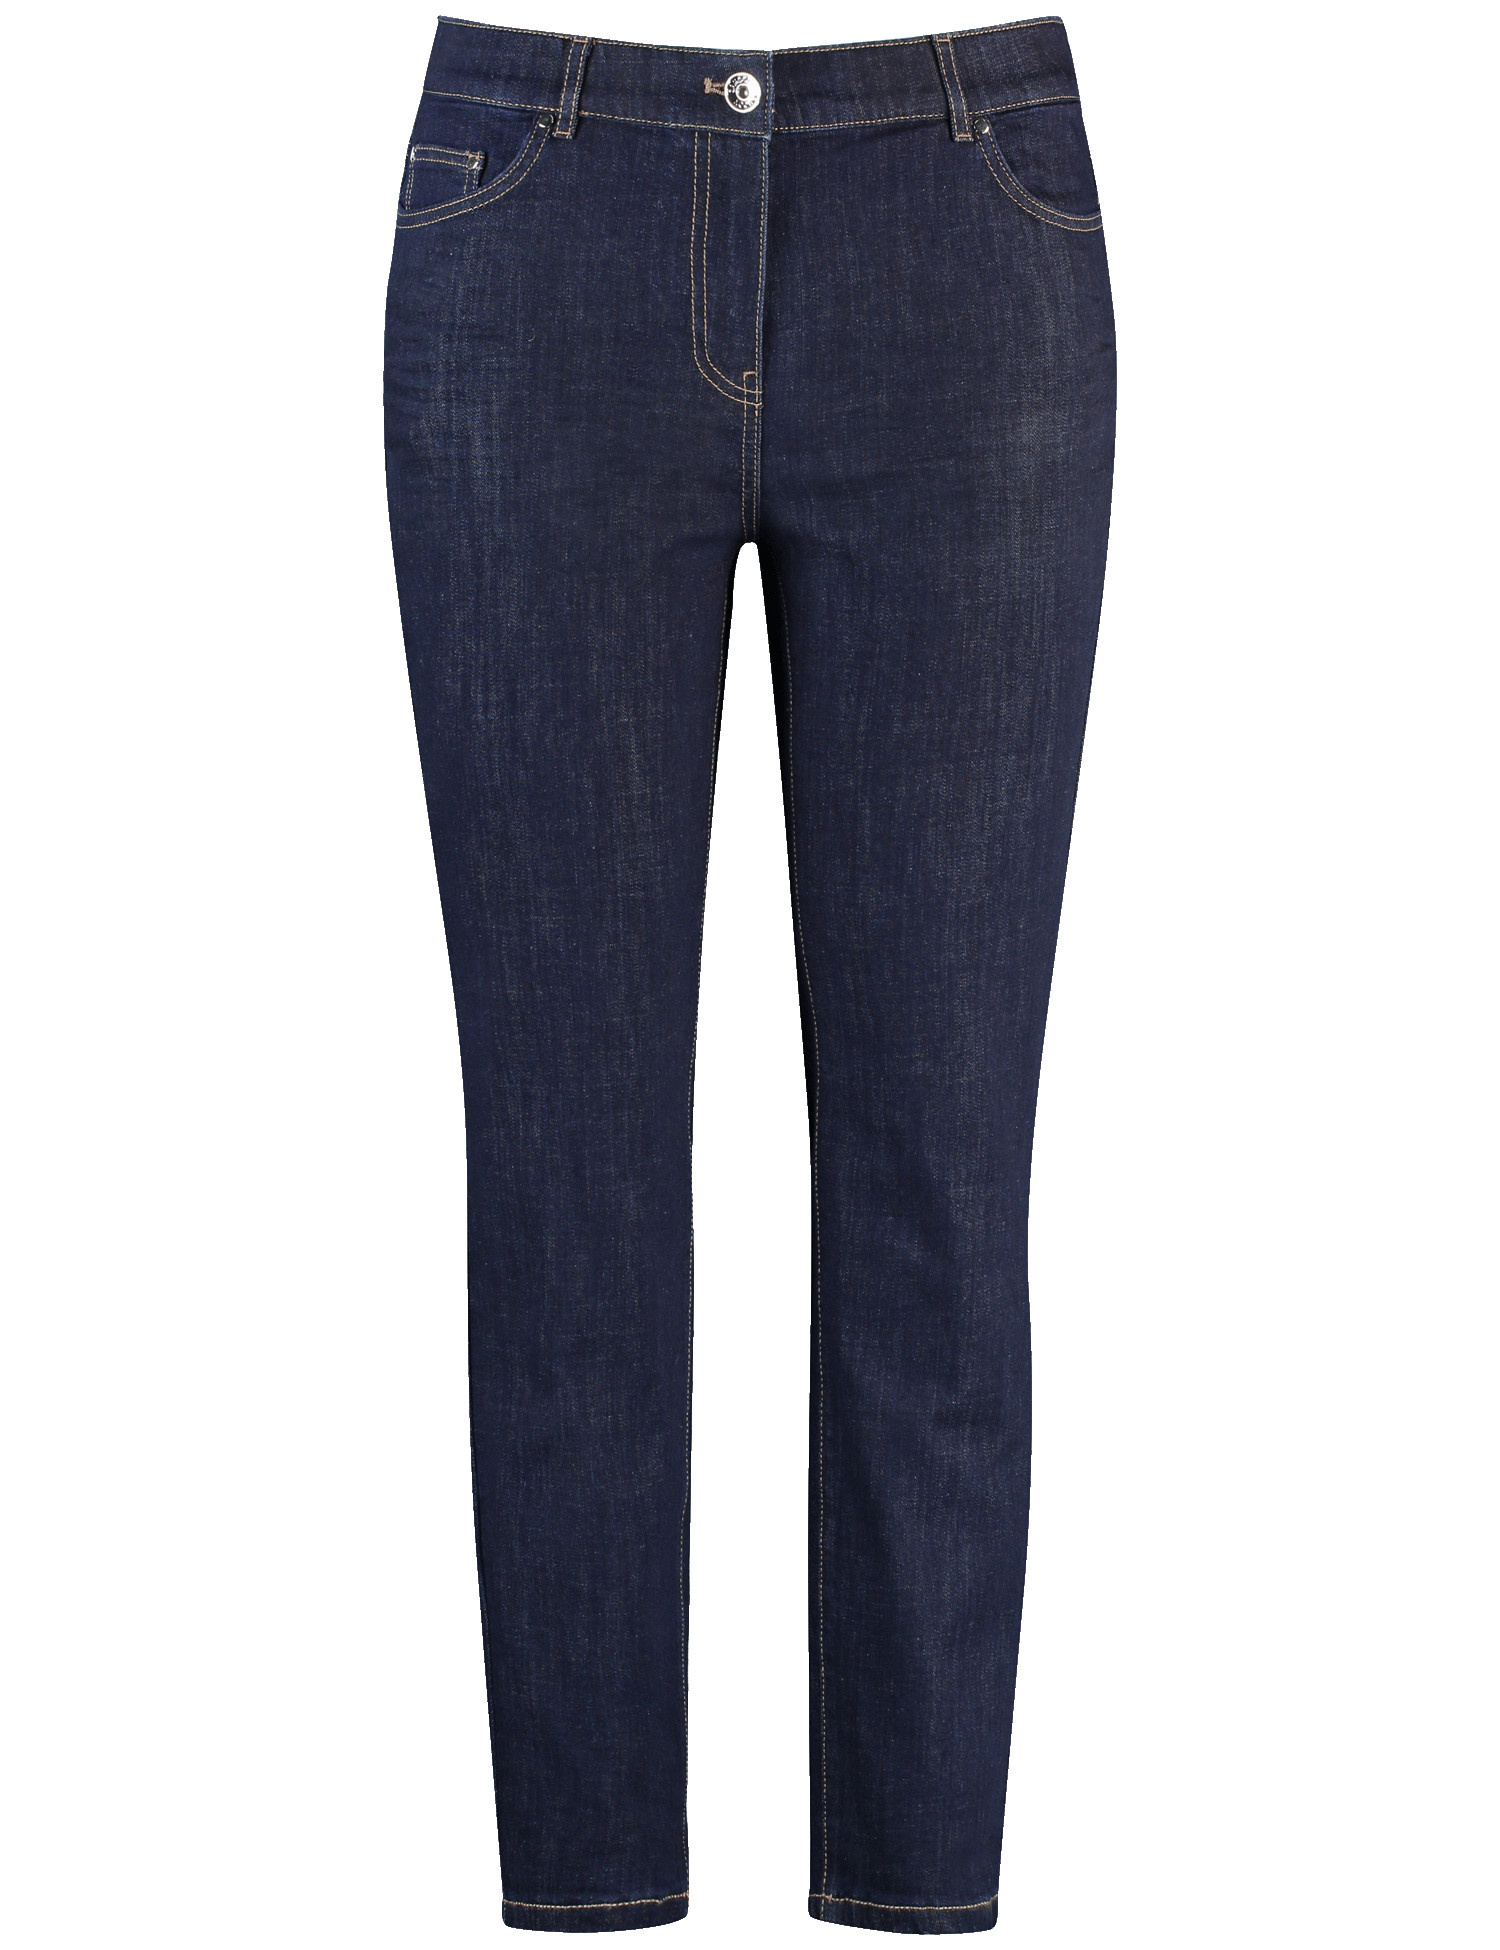 SAMOON Damen 5-Pocket Jeans mit Stretchkomfort Betty Jeans Baumwolle Blau, 42 von SAMOON